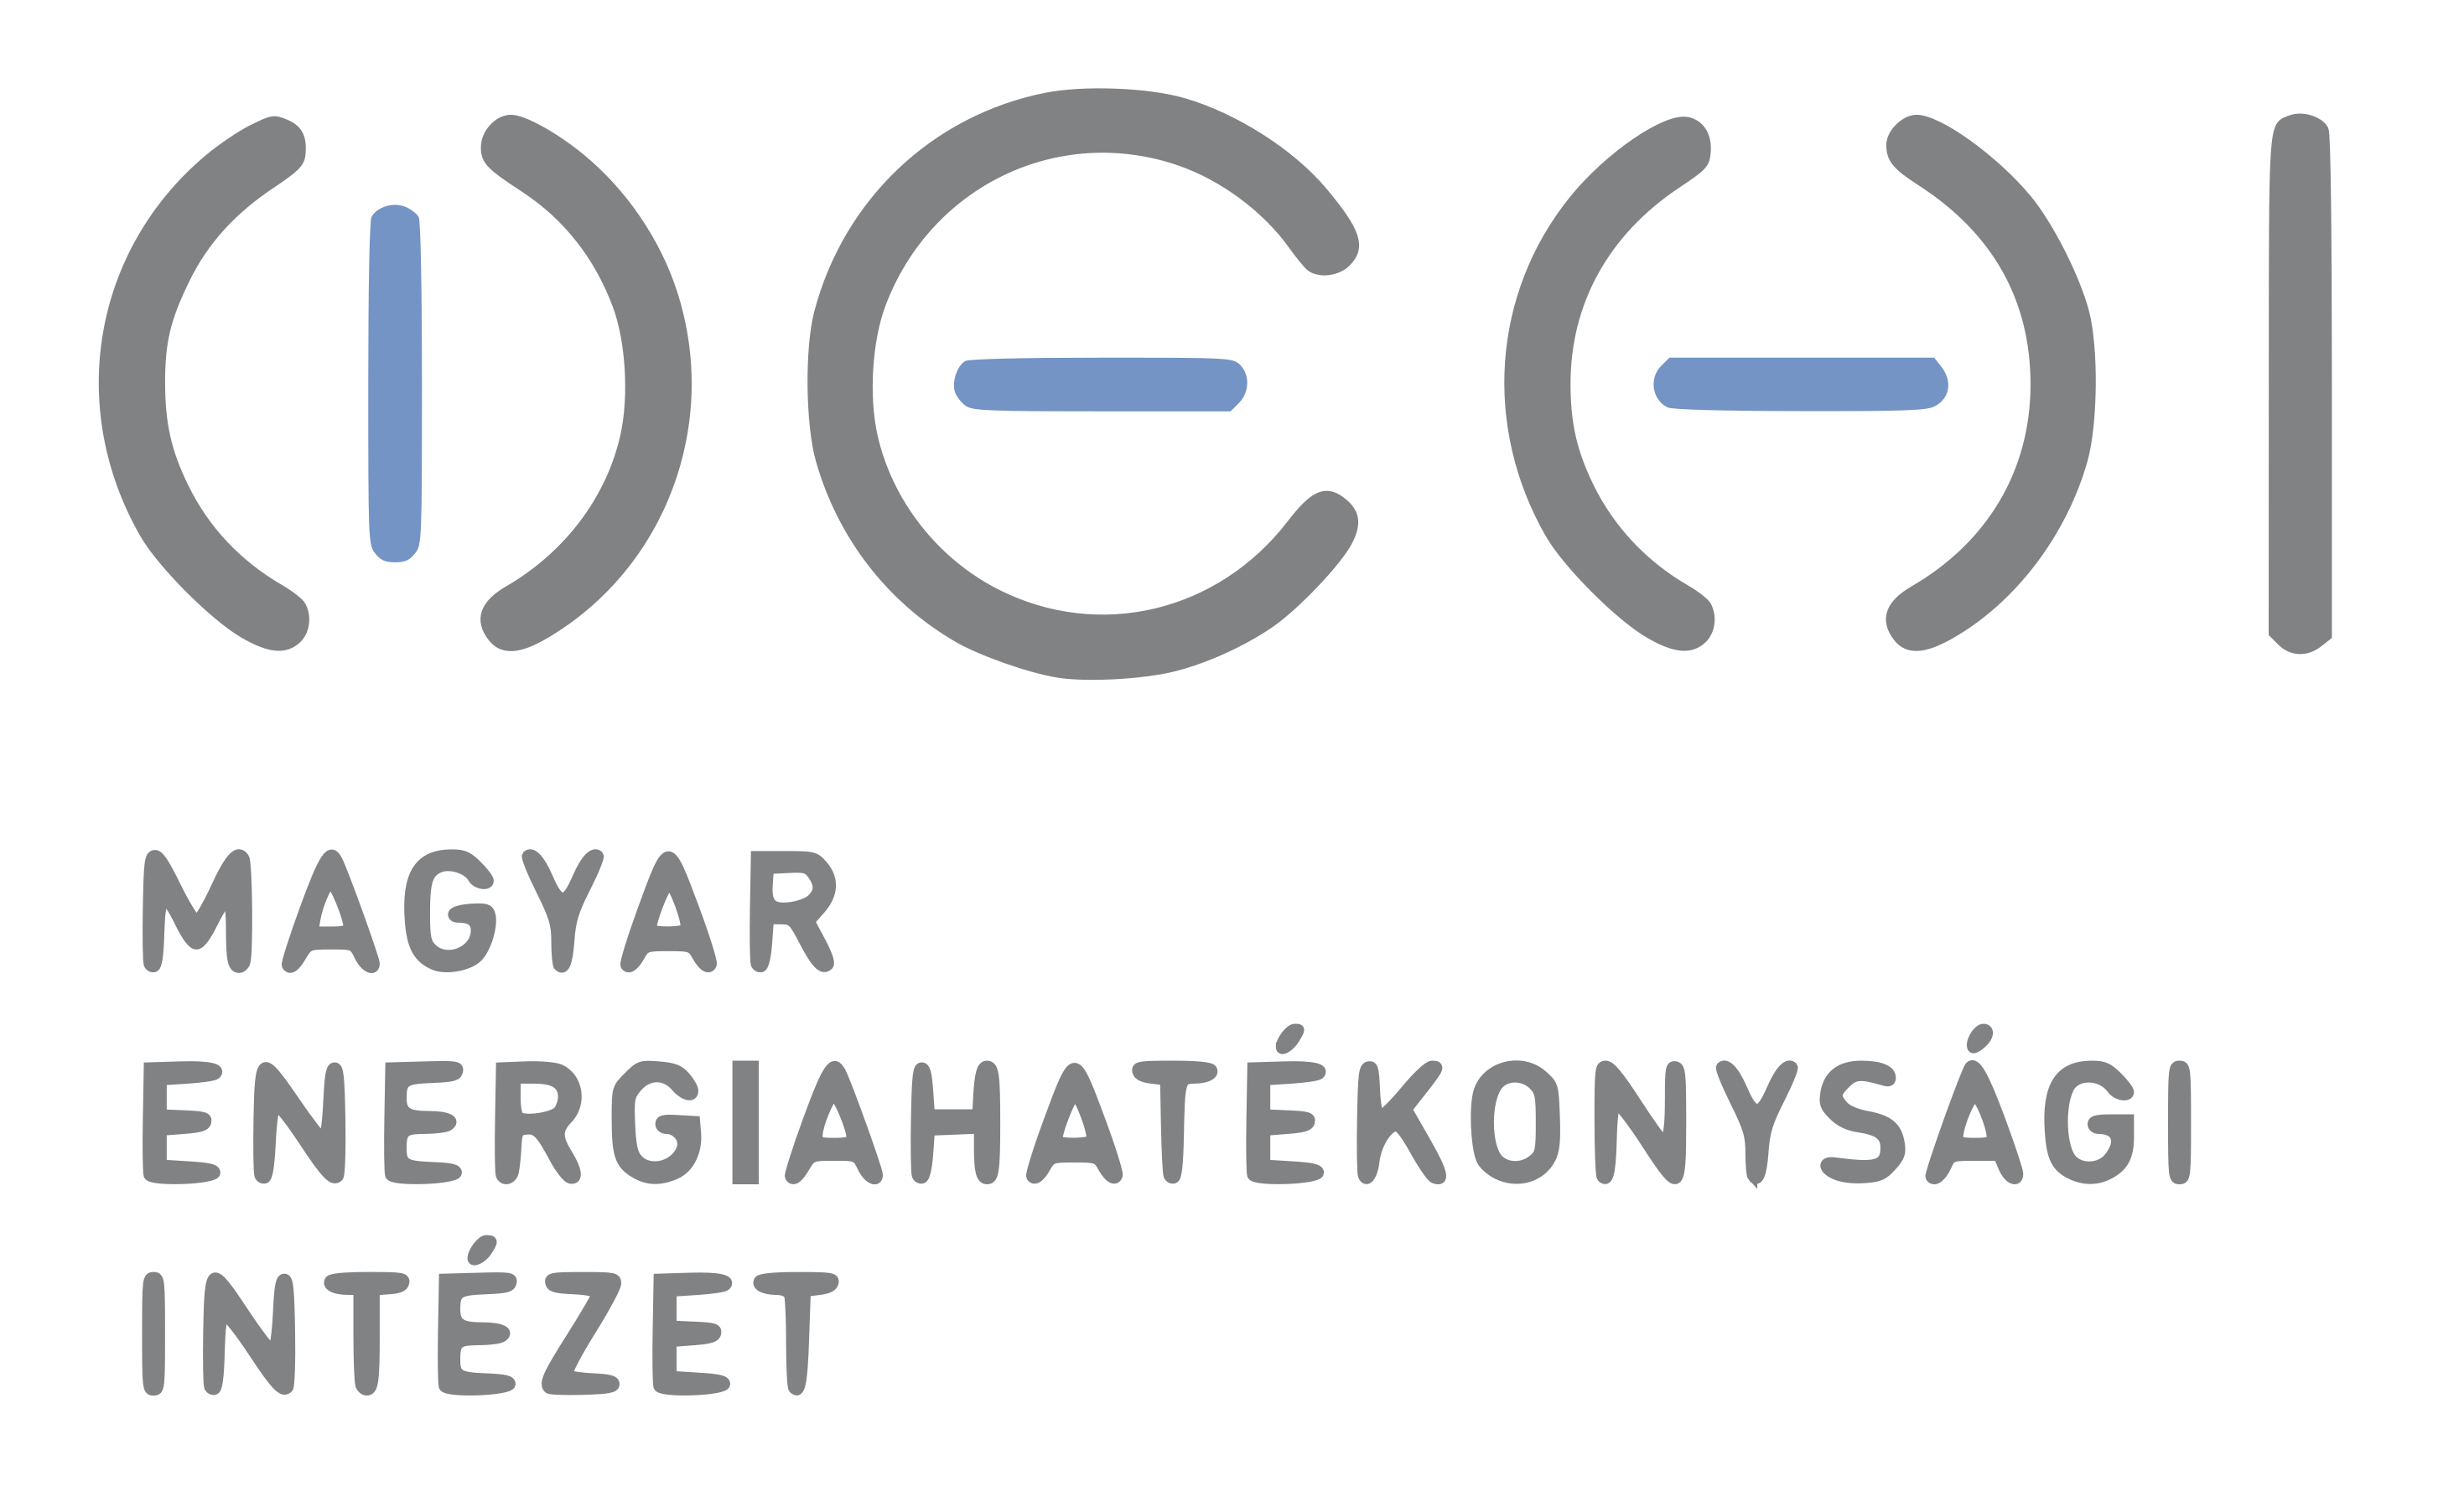 Hungarian Energy Efficiency Institute